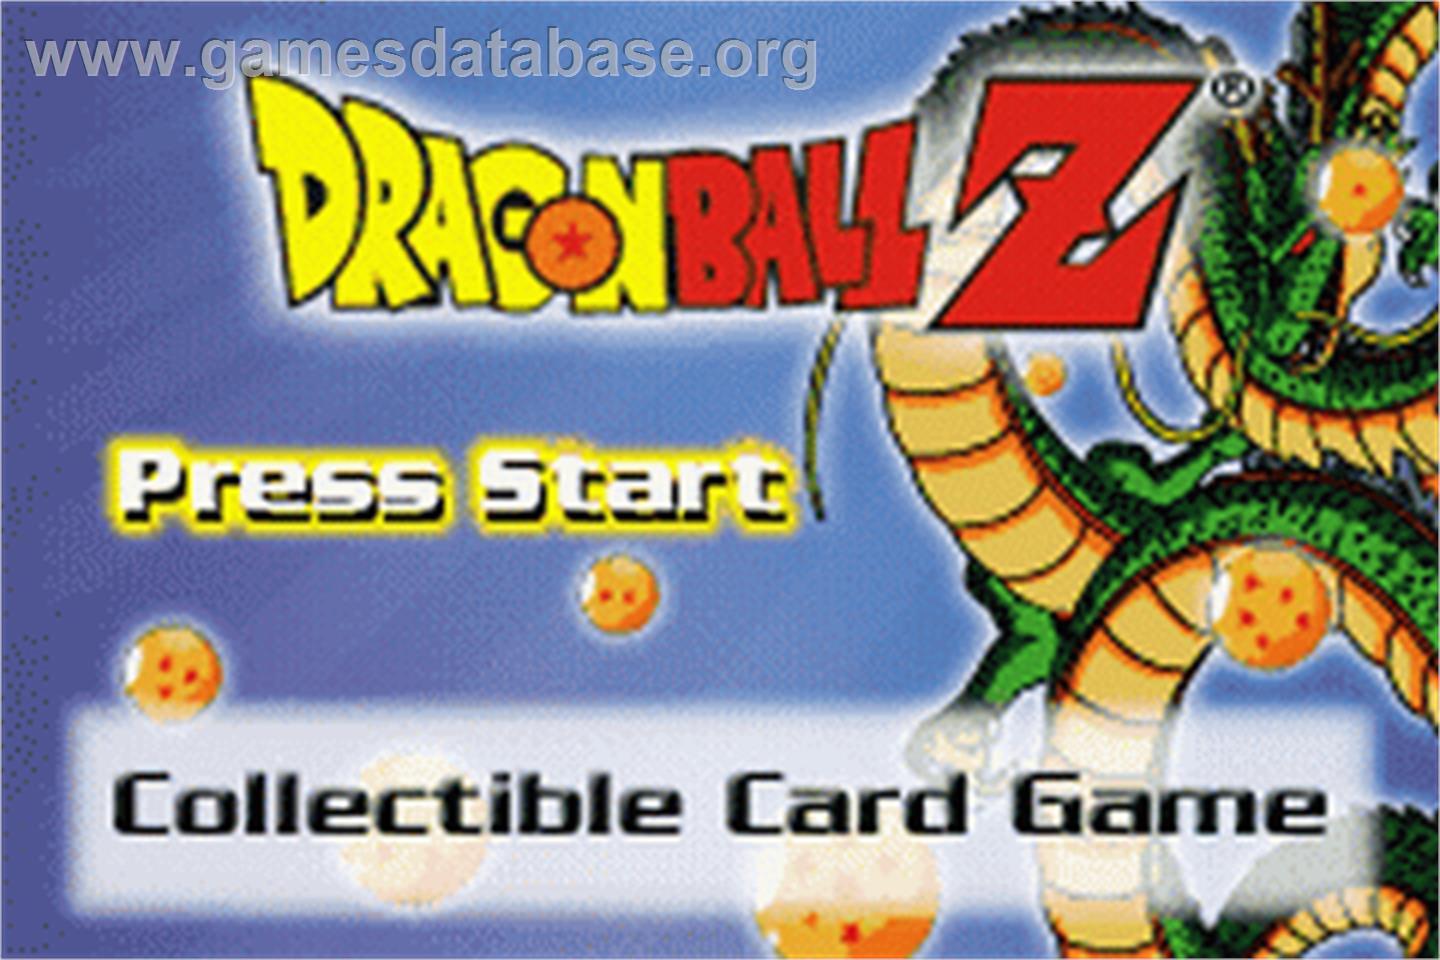 Dragonball Z Collectible Card Game - Nintendo Game Boy Advance - Artwork - Title Screen